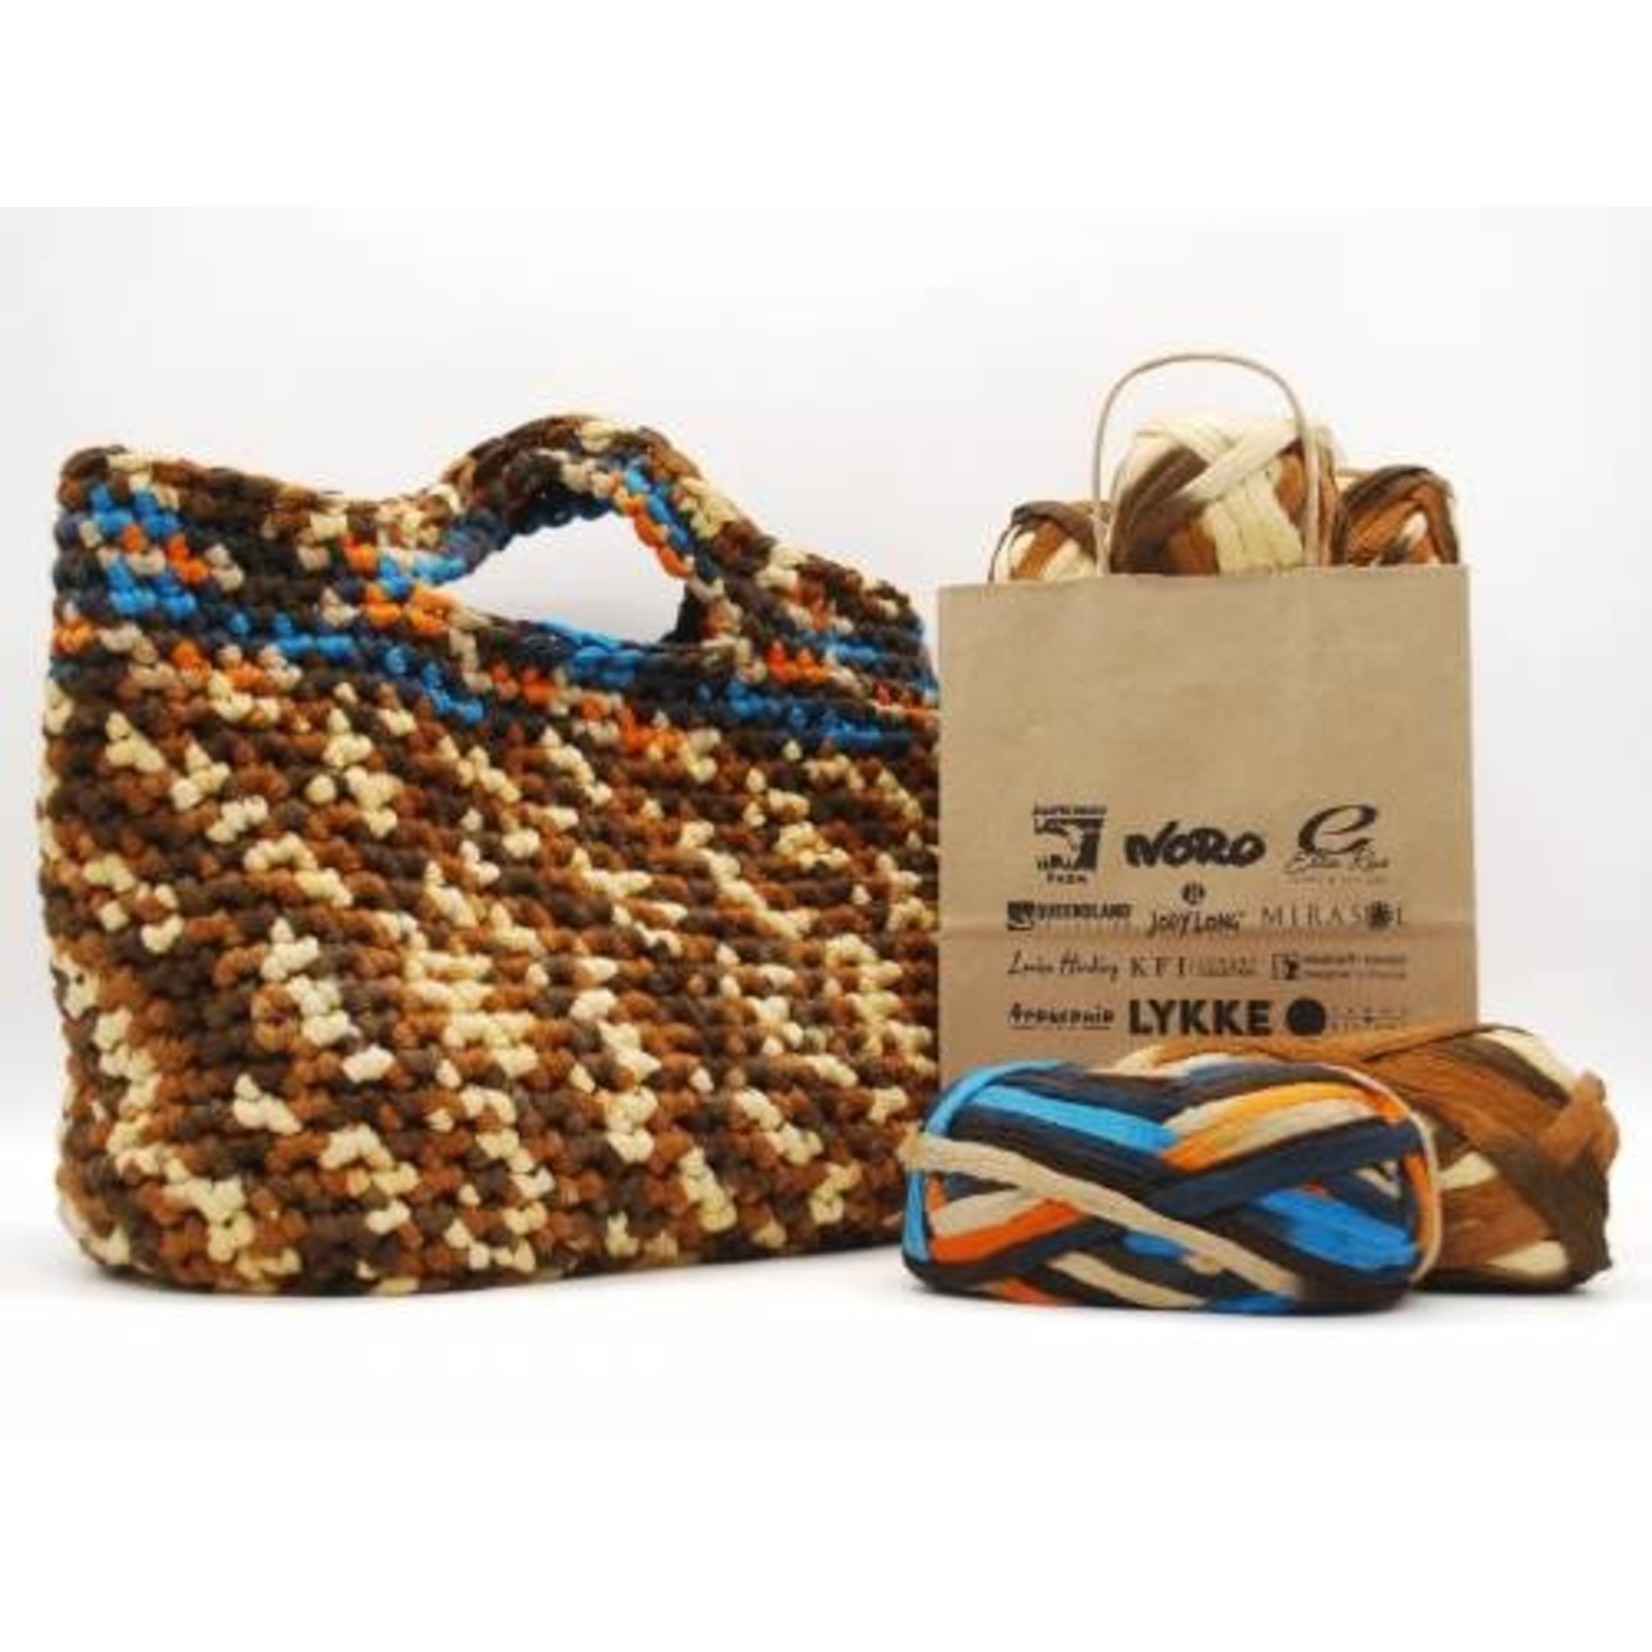 Knitting Fever Inc. Sadie Tote Bag Kit